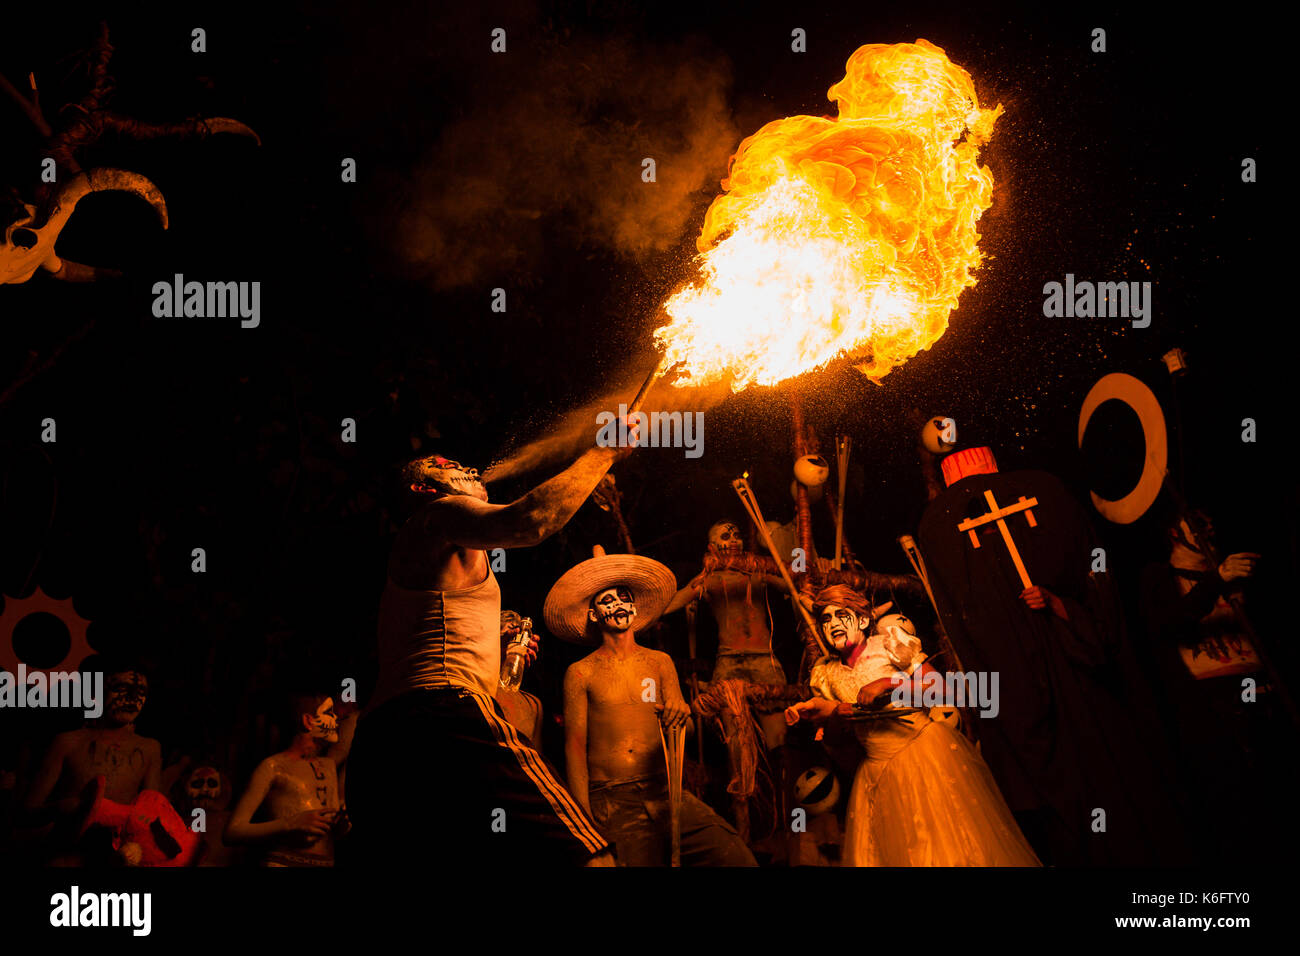 Eine junge Salvadorianische Mann spuckt Feuer, wie er während des La Calabiuza Parade am Tag der Toten Feier in Tonacatepeque, El Salvador, 1 Schließer Stockfoto